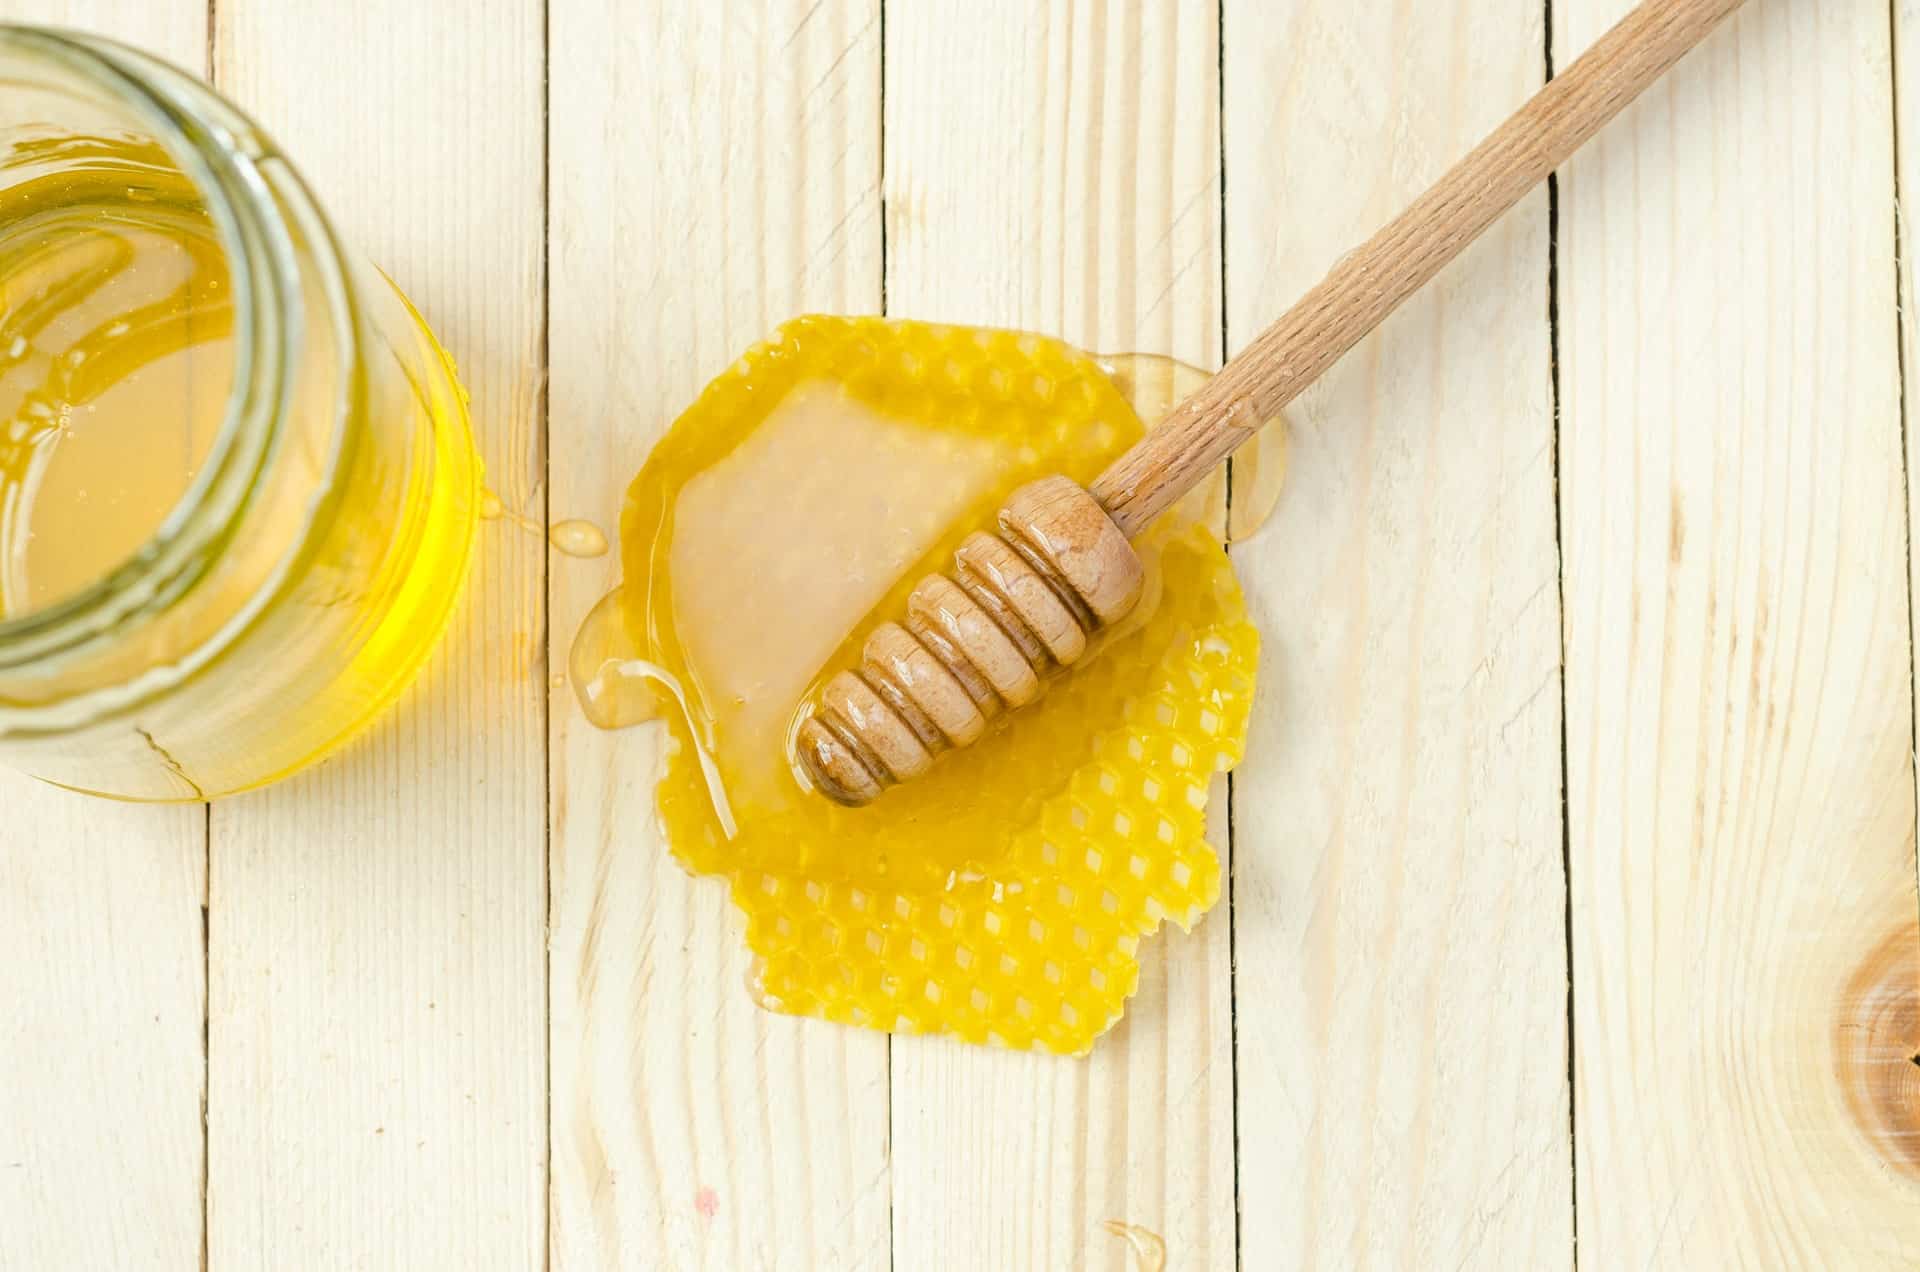 콜레스테롤을 낮추는 것 외에도 꿀의 건강상의 이점은 다음과 같습니다.